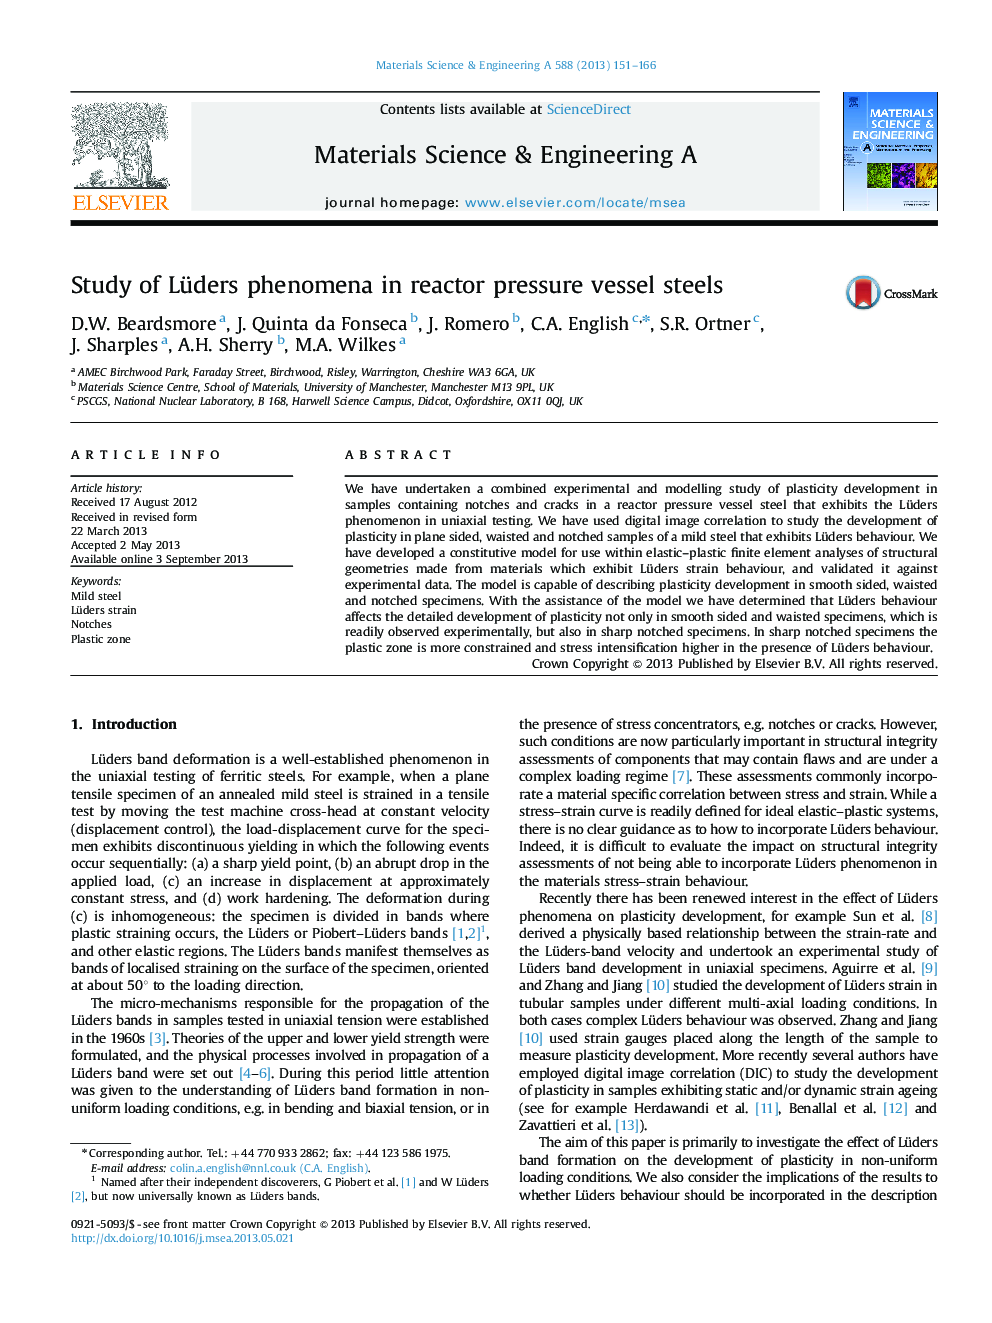 Study of Lüders phenomena in reactor pressure vessel steels